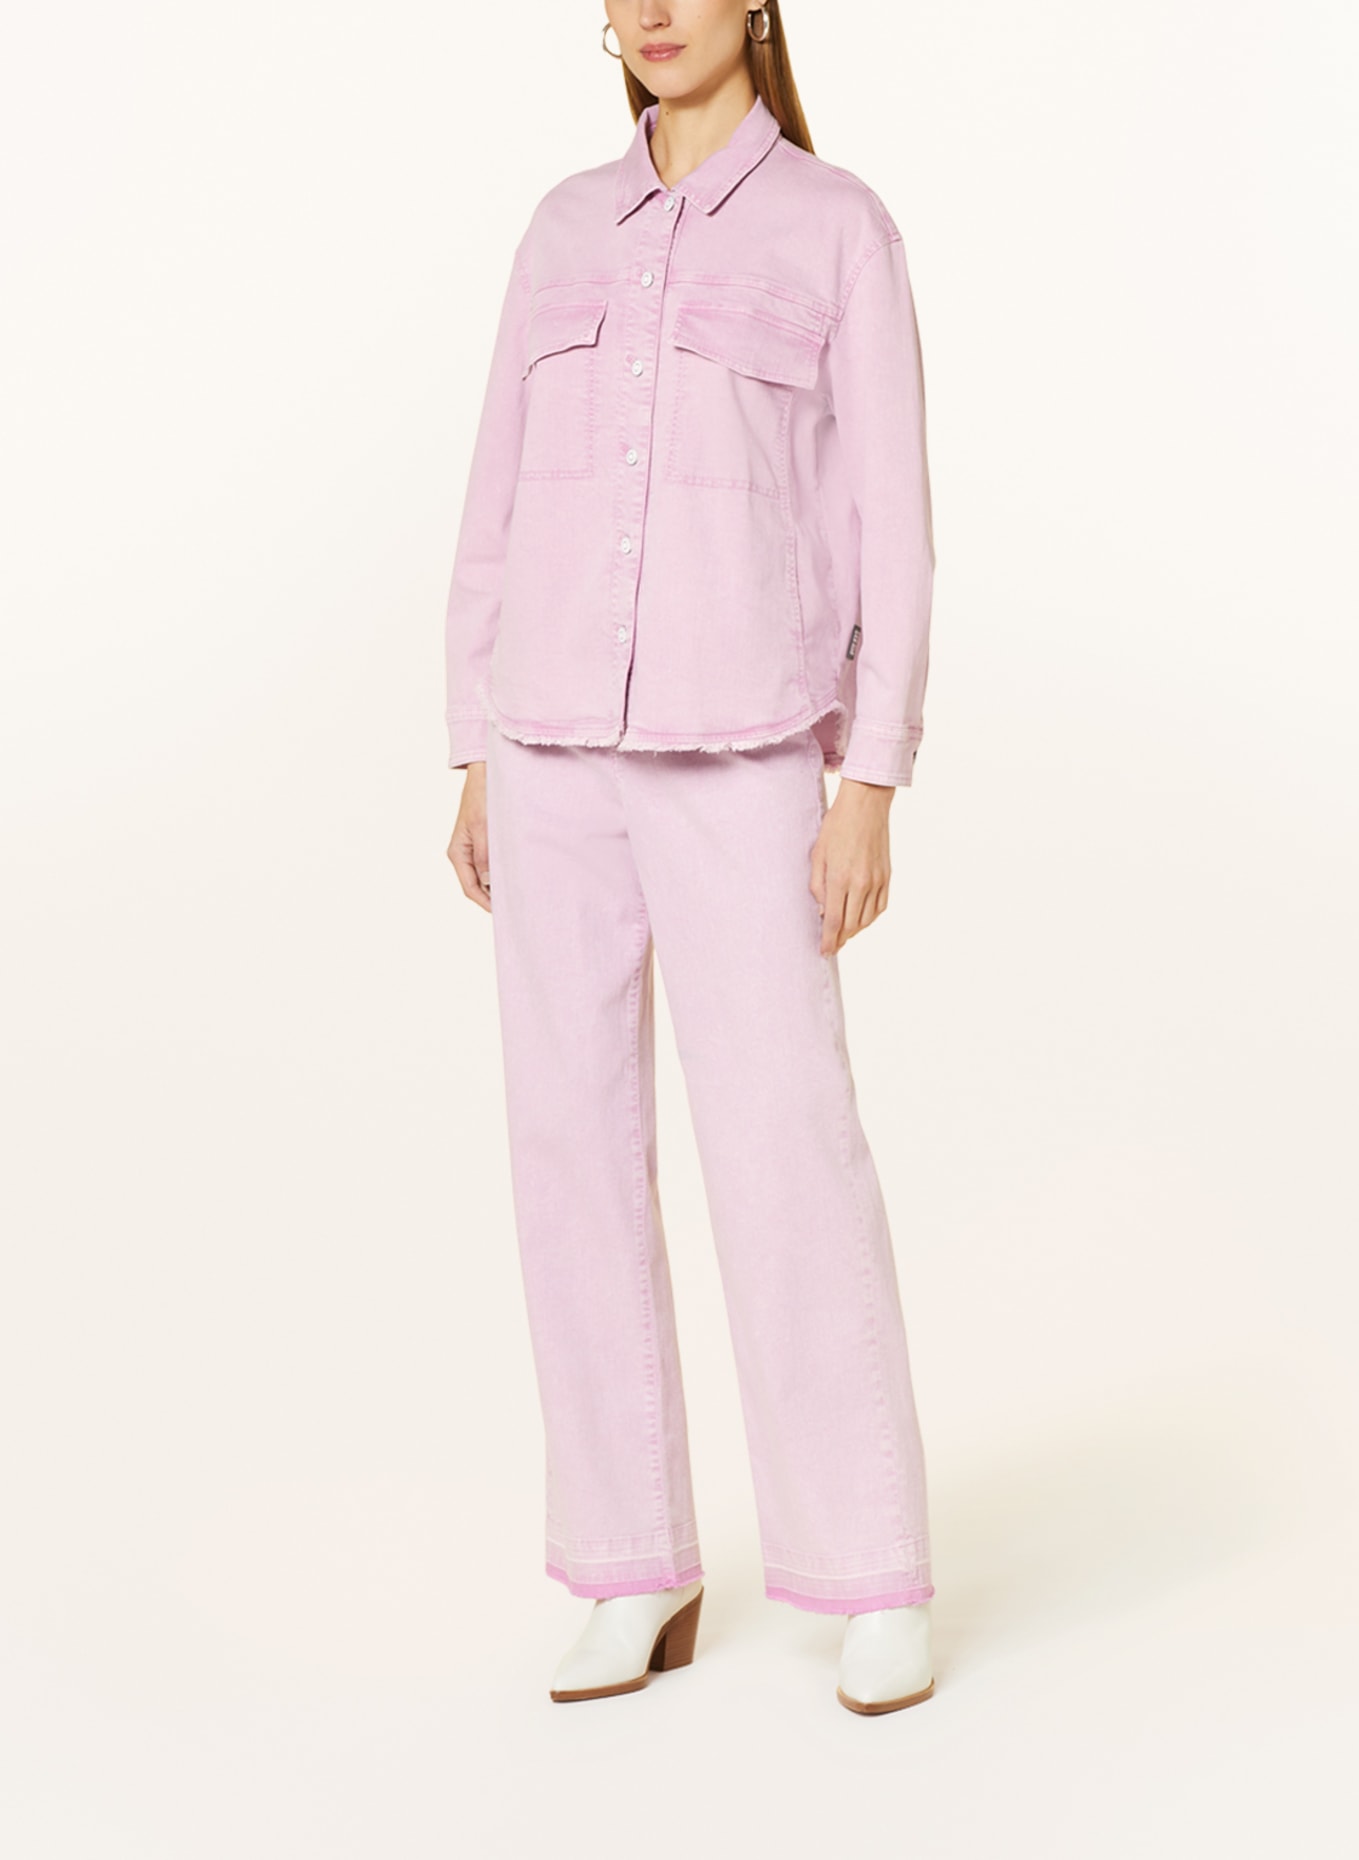 MARC CAIN Denim blouse, Color: 708 bright pink lavender (Image 2)